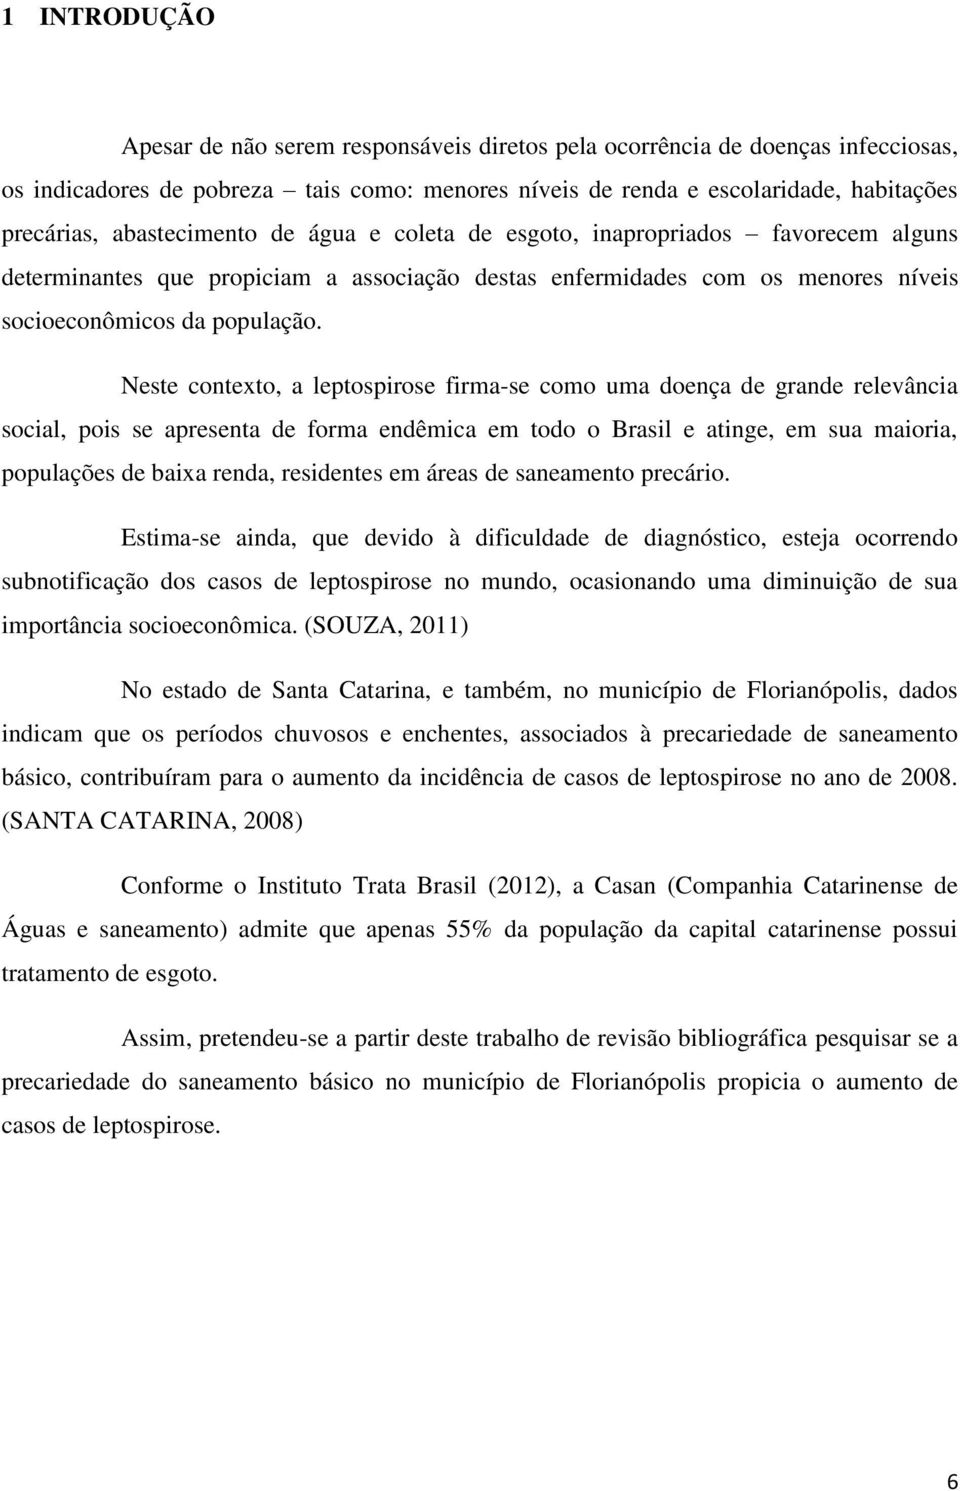 Neste contexto, a leptospirose firma-se como uma doença de grande relevância social, pois se apresenta de forma endêmica em todo o Brasil e atinge, em sua maioria, populações de baixa renda,